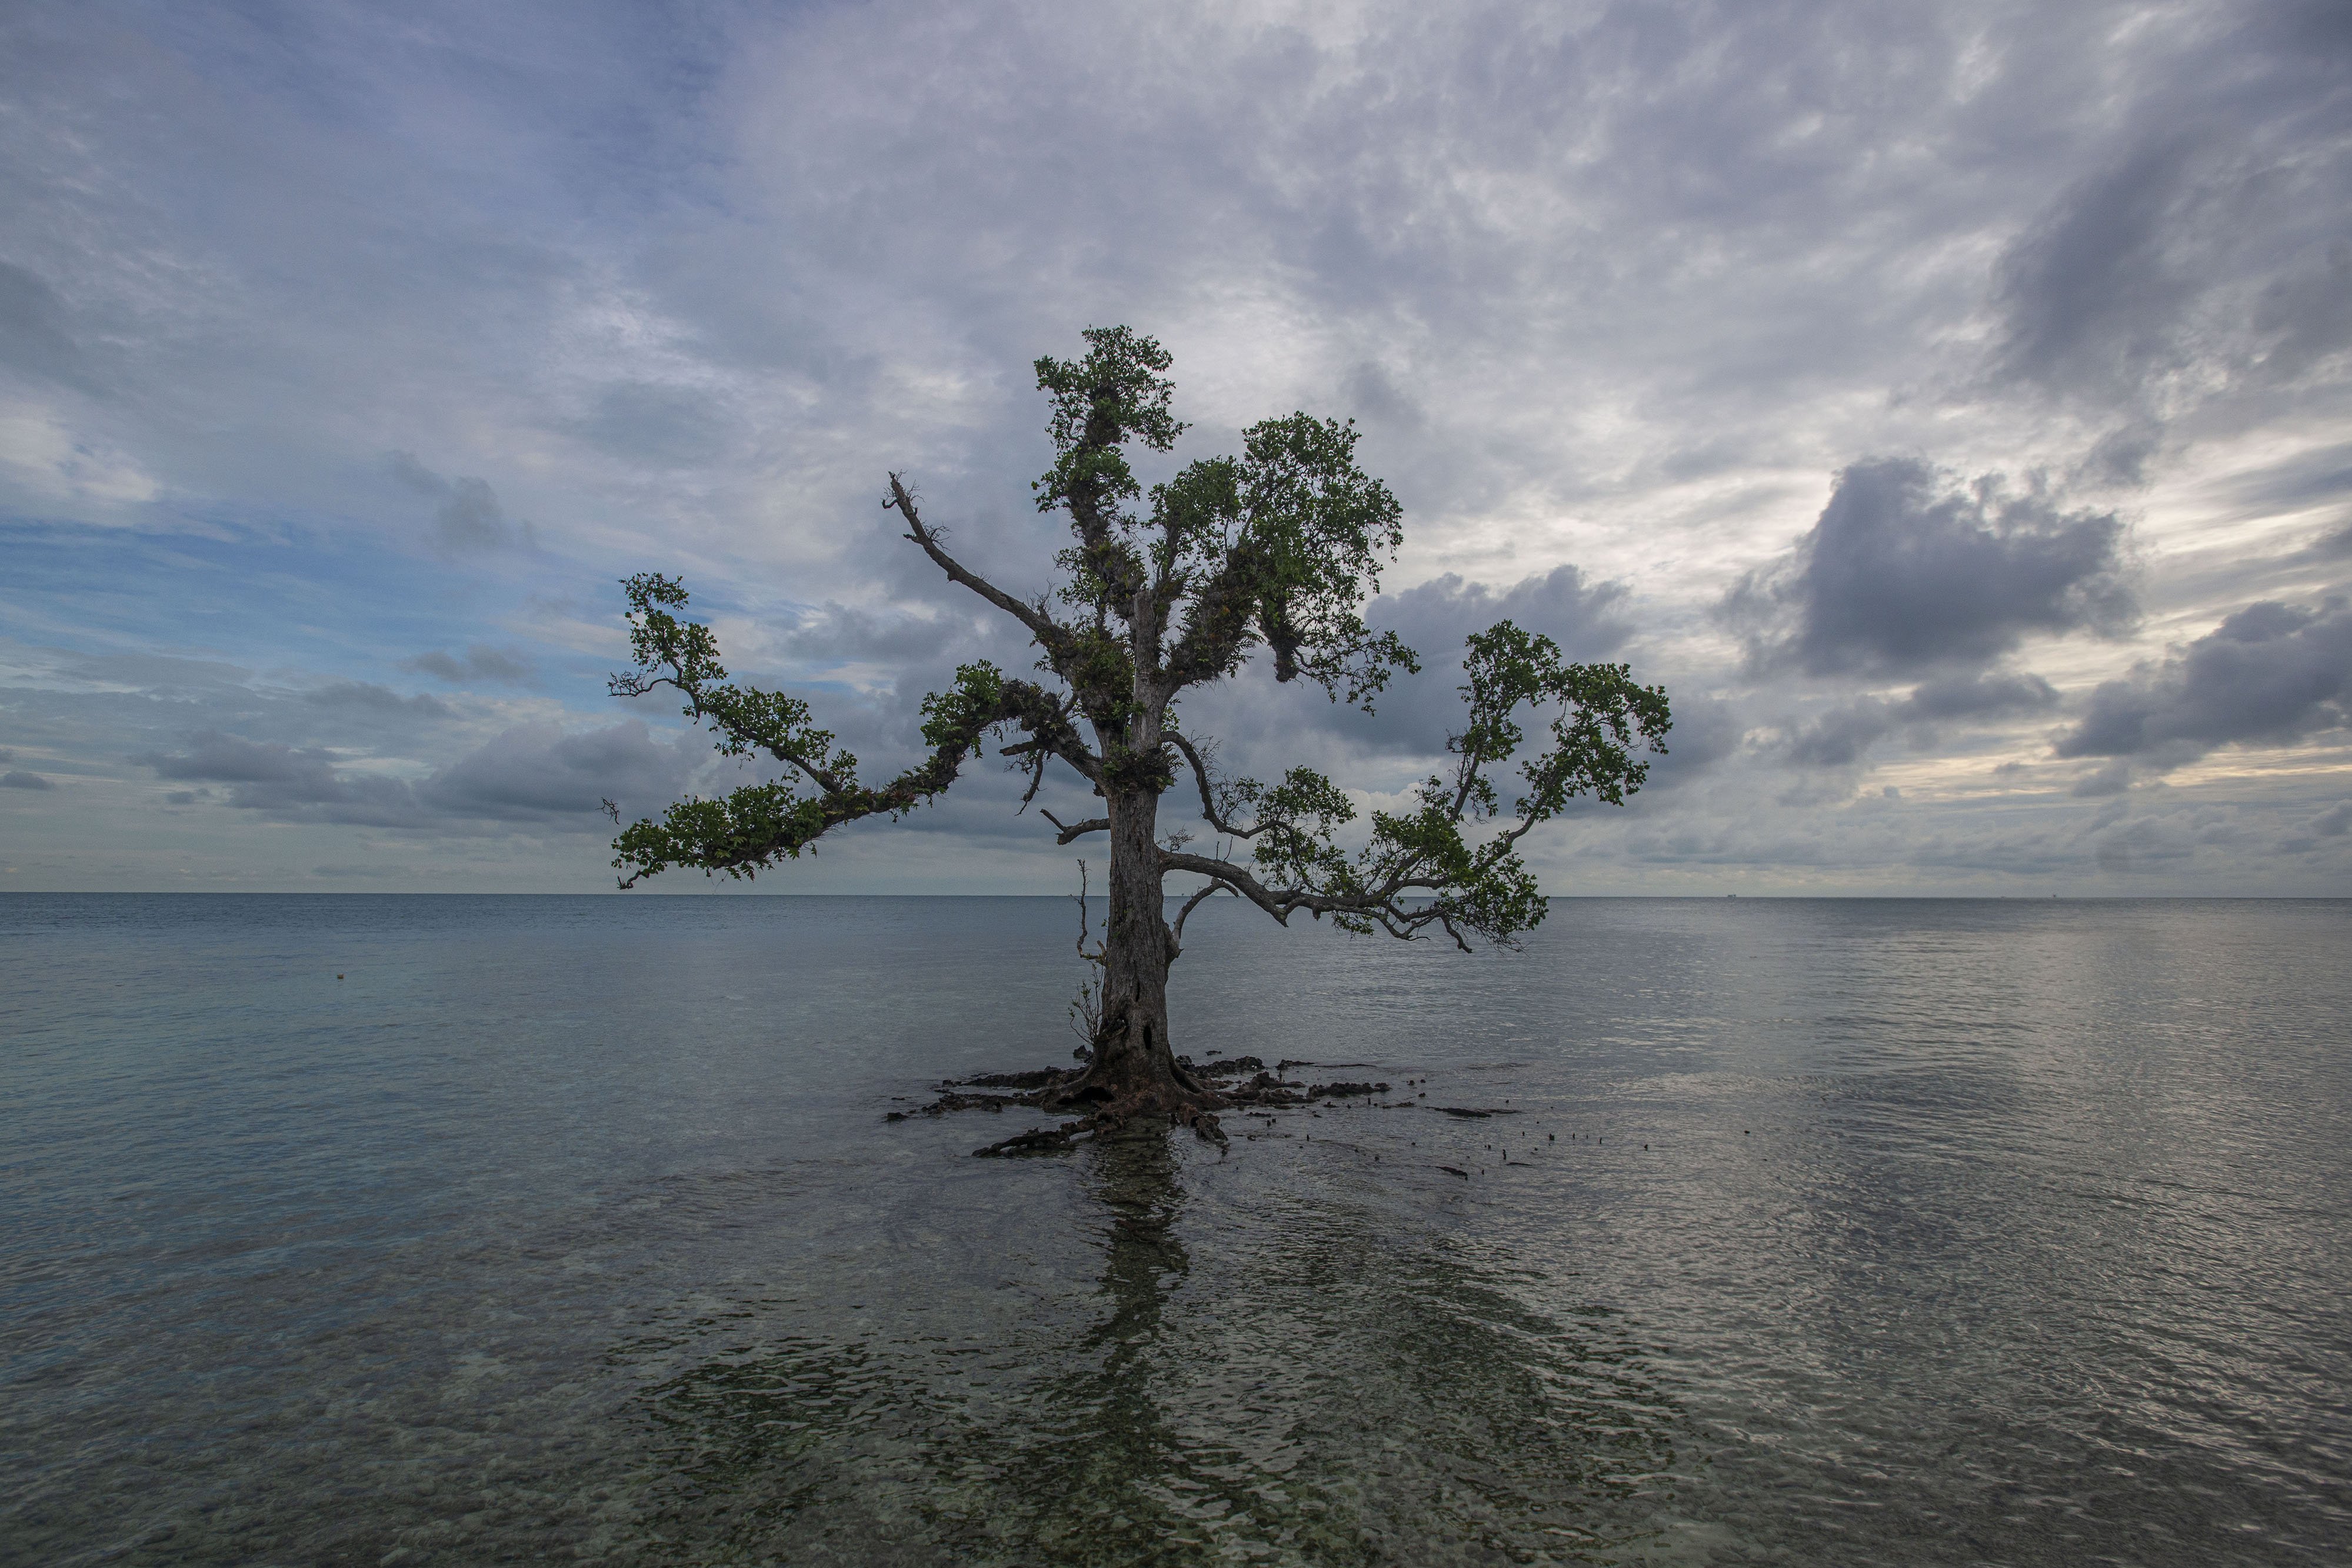 Sebuah pohon bakau berdiri tegak di sudut Pantai Pulau Sabira, Kepulauan Seribu, Jakarta.